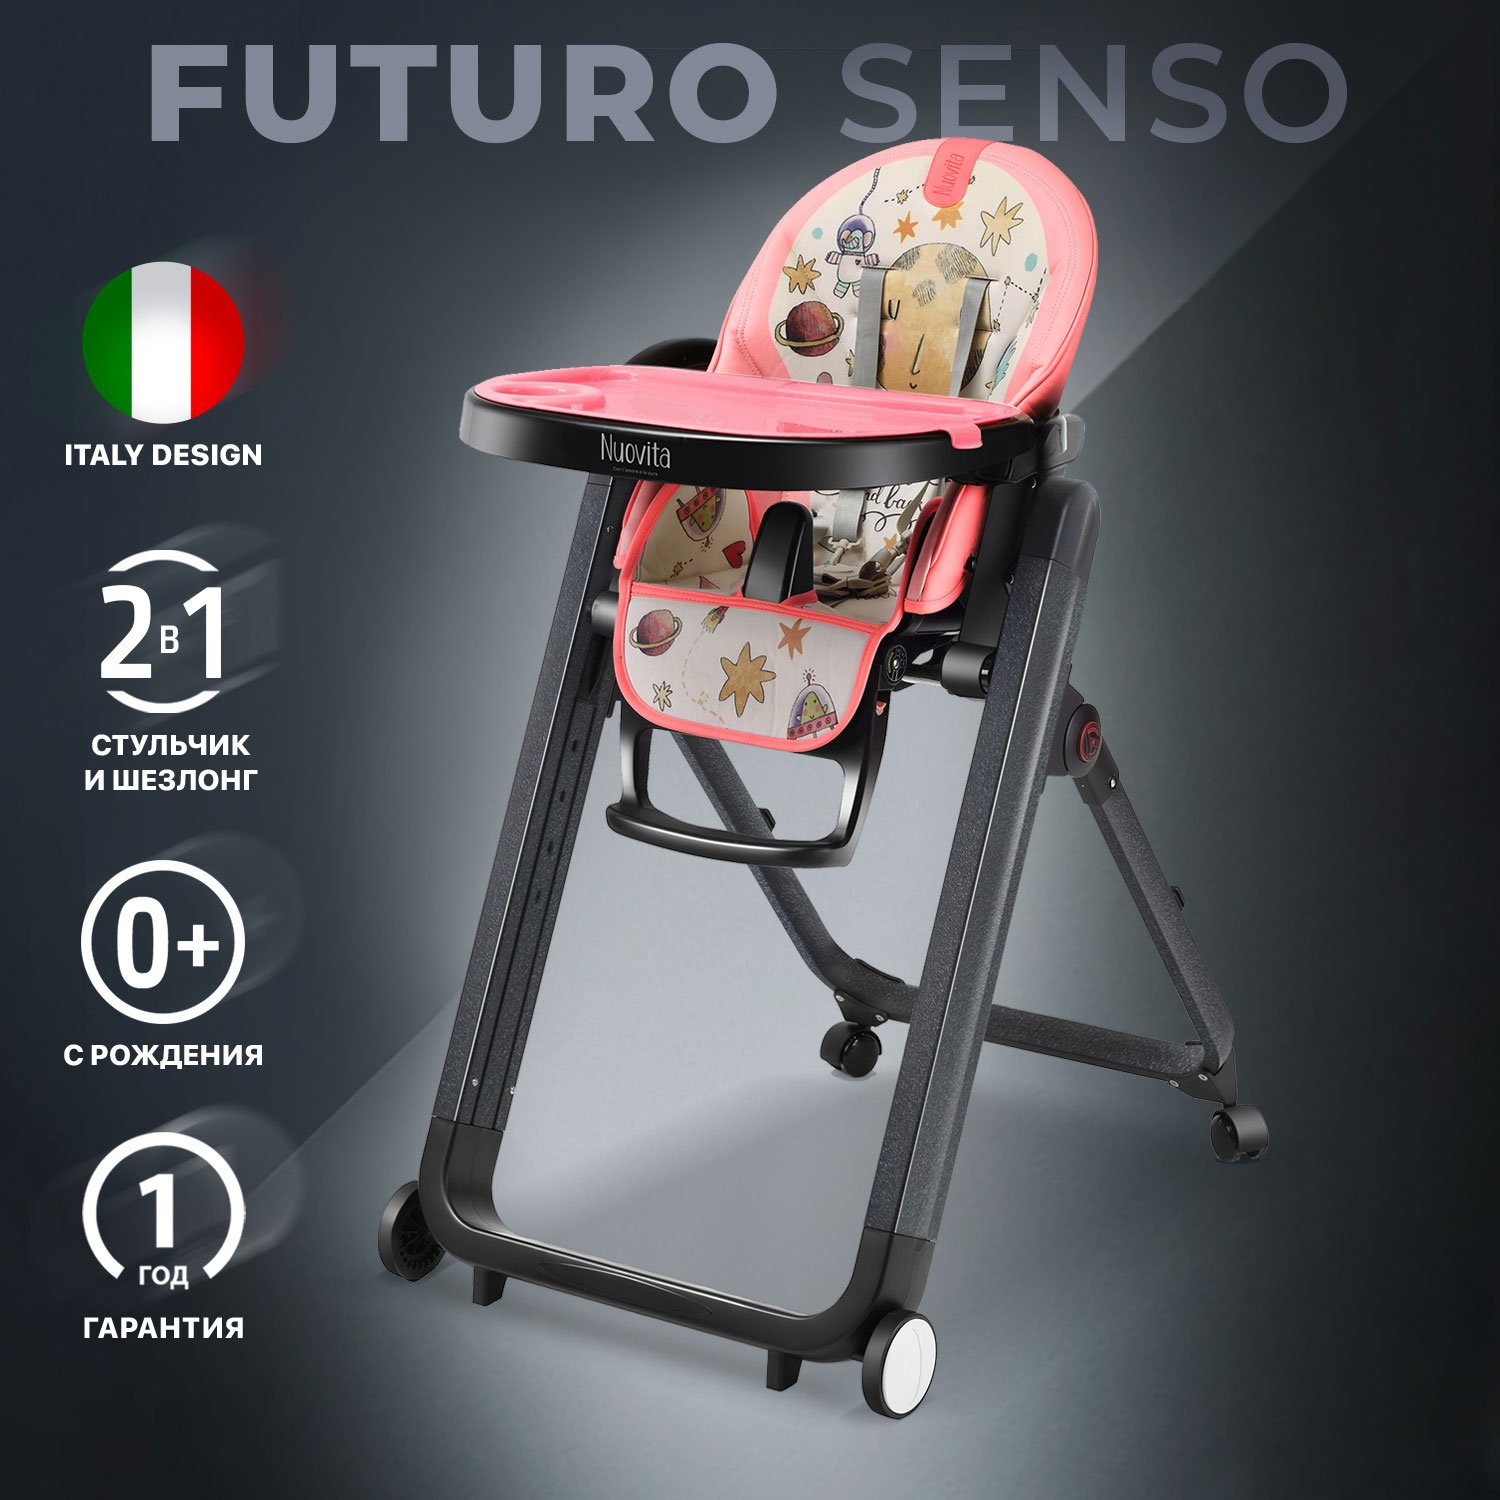 Стульчик для кормления Nuovita Futuro Senso Nero (Cosmo rosa/Розовый космос) стульчик для кормления nuovita futuro senso 2 в 1